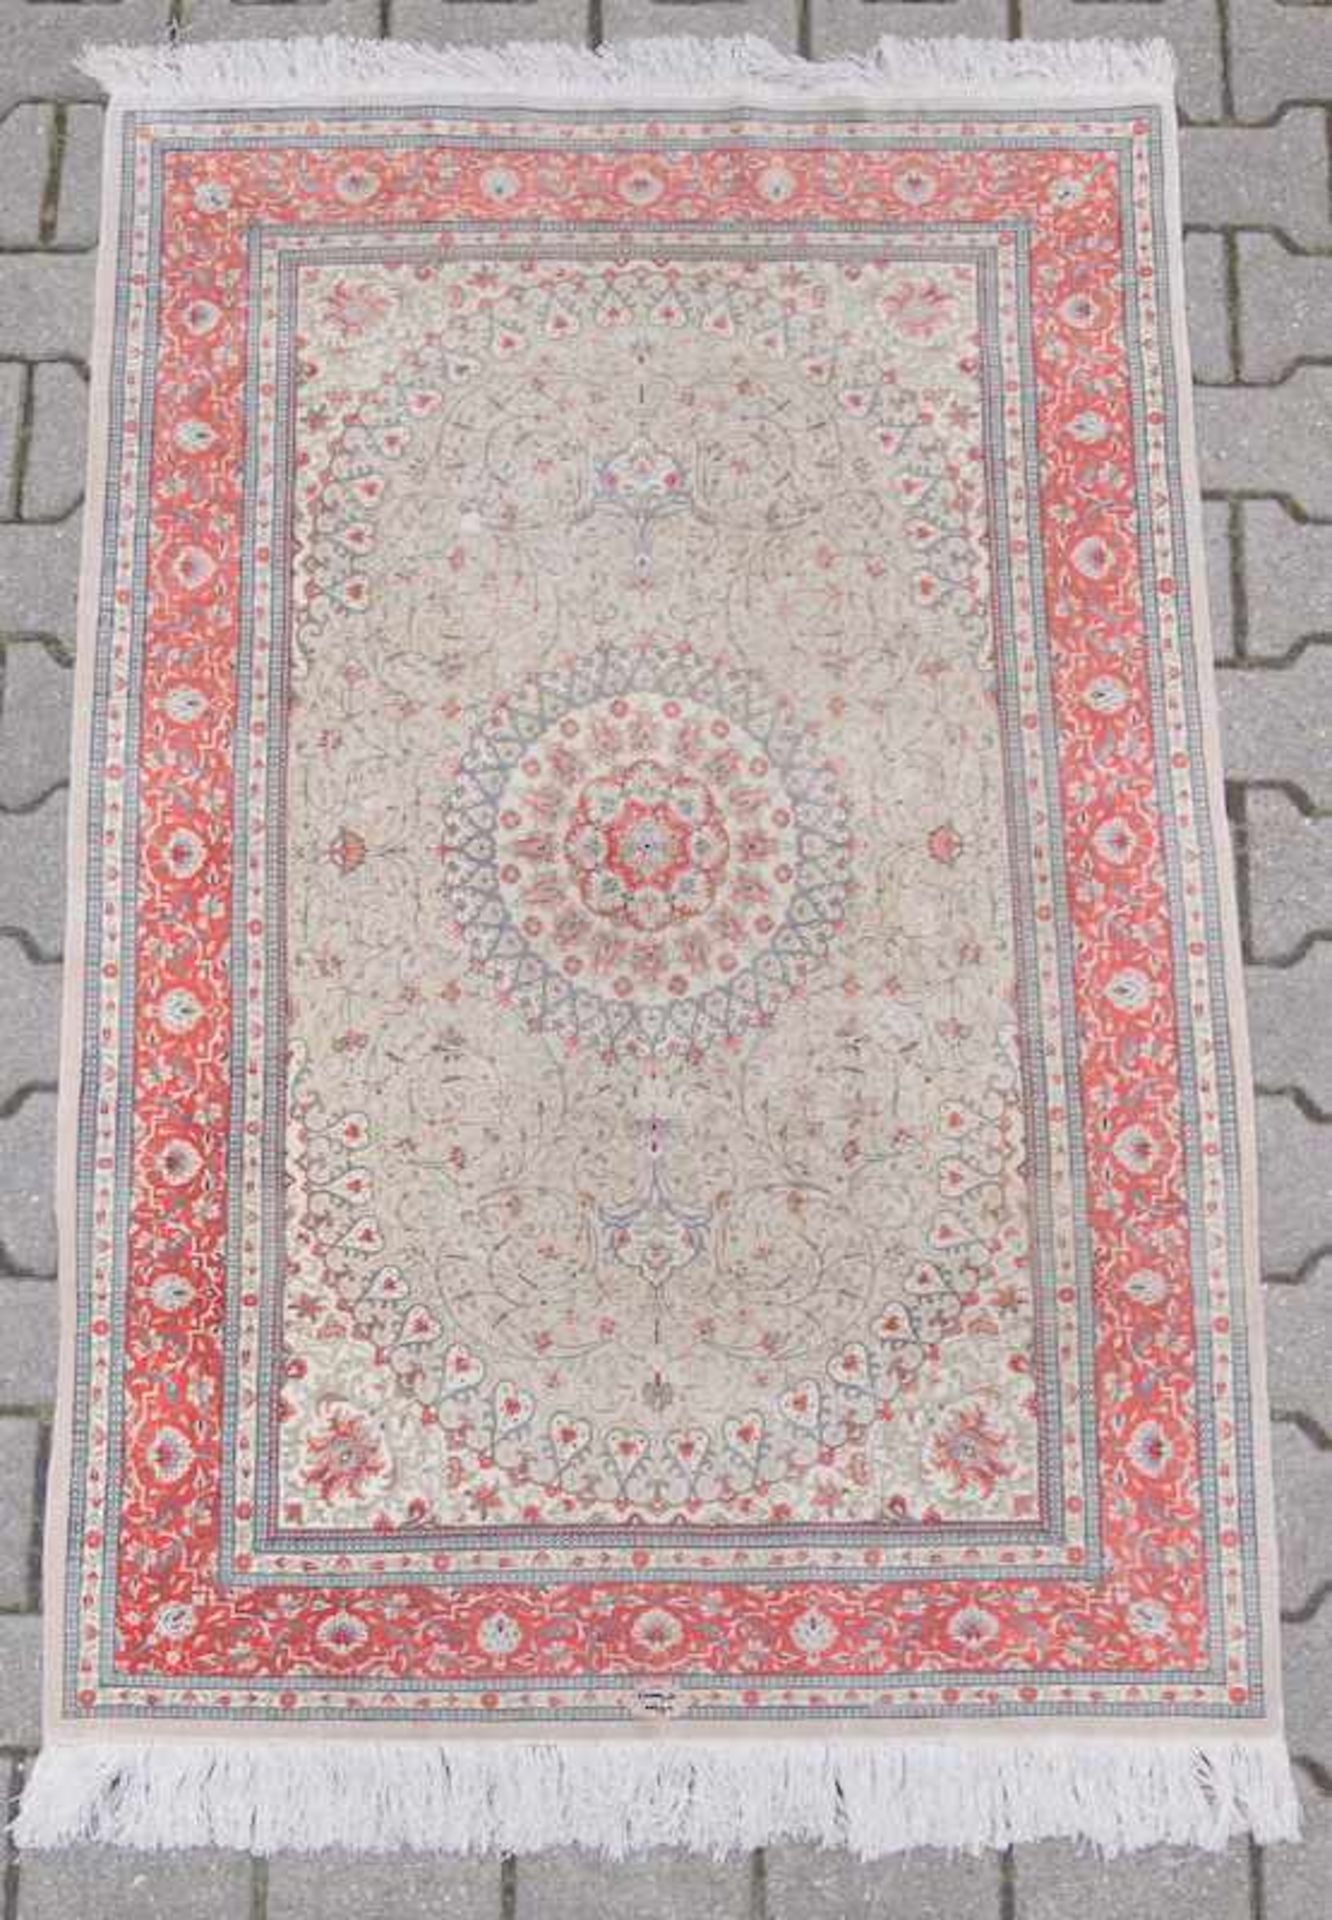 Feiner Persischer TeppichWolle auf Baumwolle, sehr gepflegt, Anilinfarben, ca. 160 x 90cm.